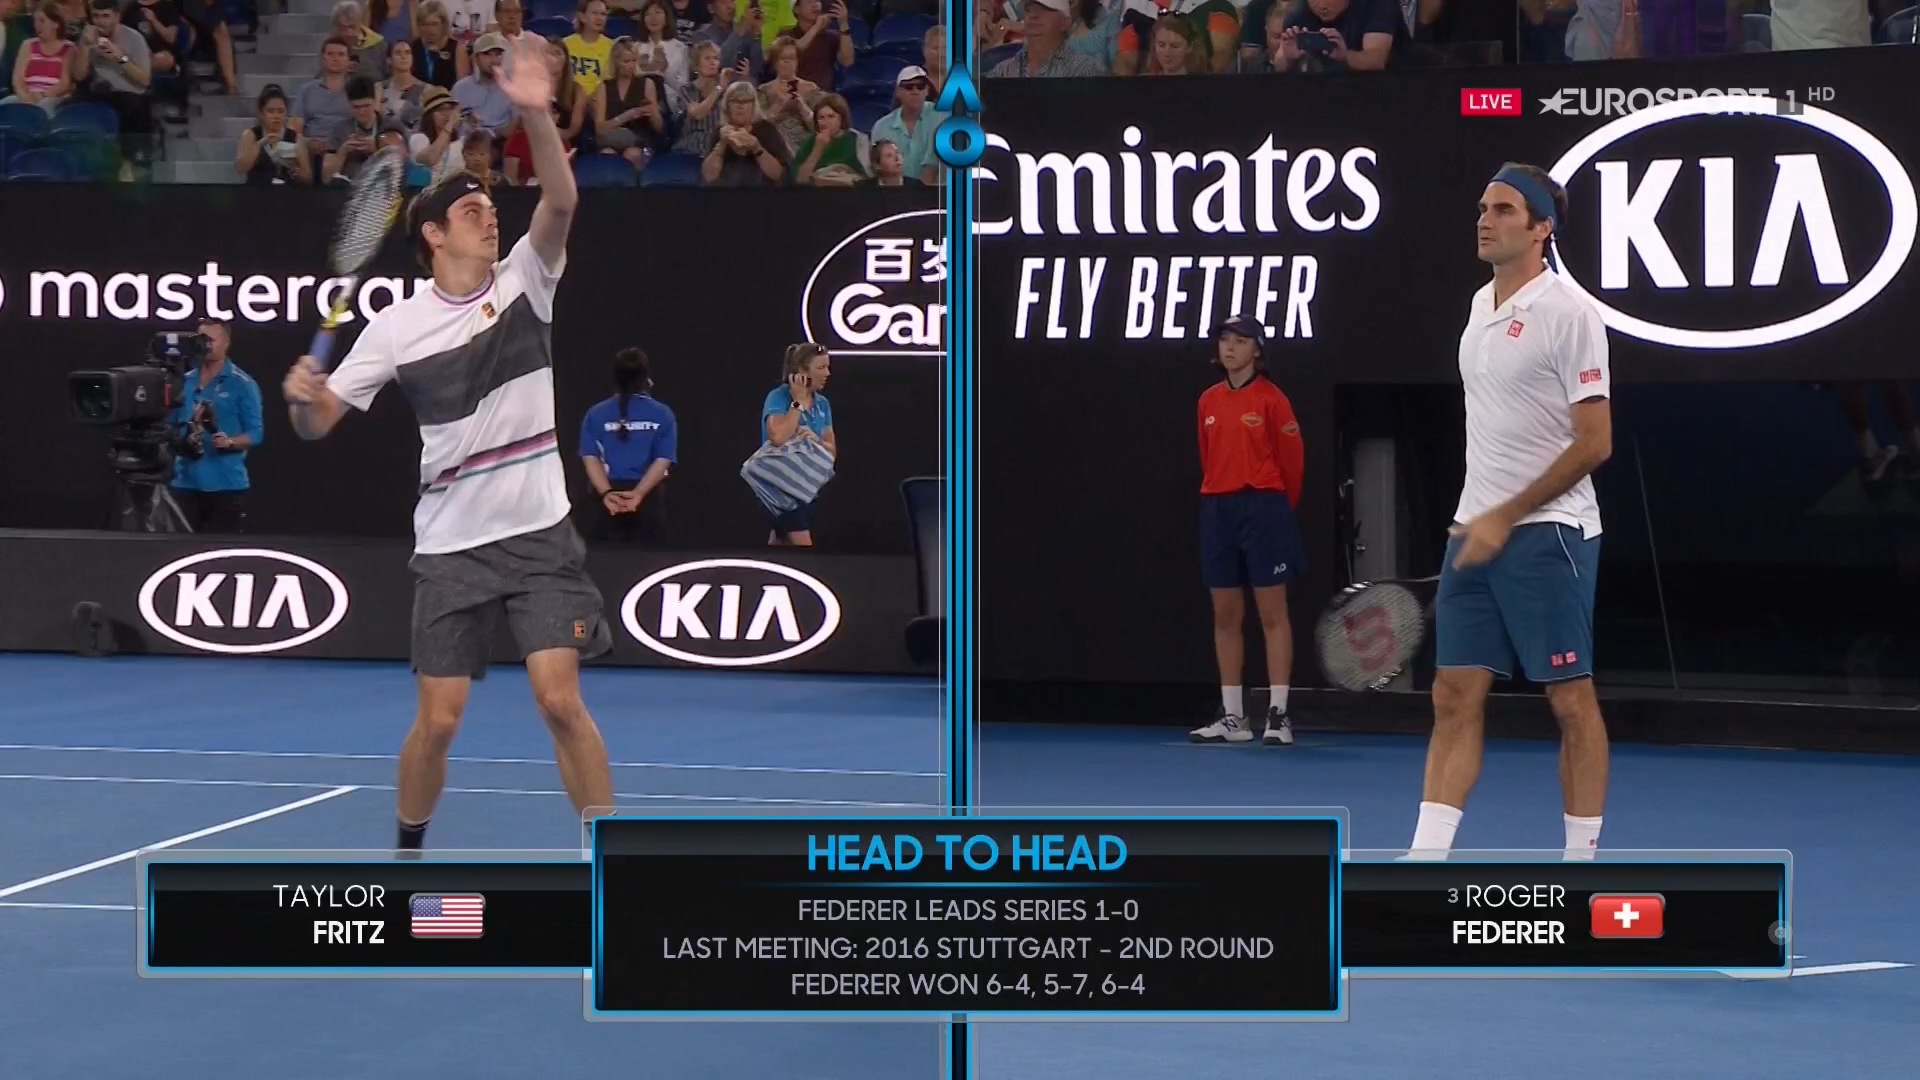 TENNIS: Australian Open 3rd Round - Taylor Fritz vs Roger Federer - 18/01/2019